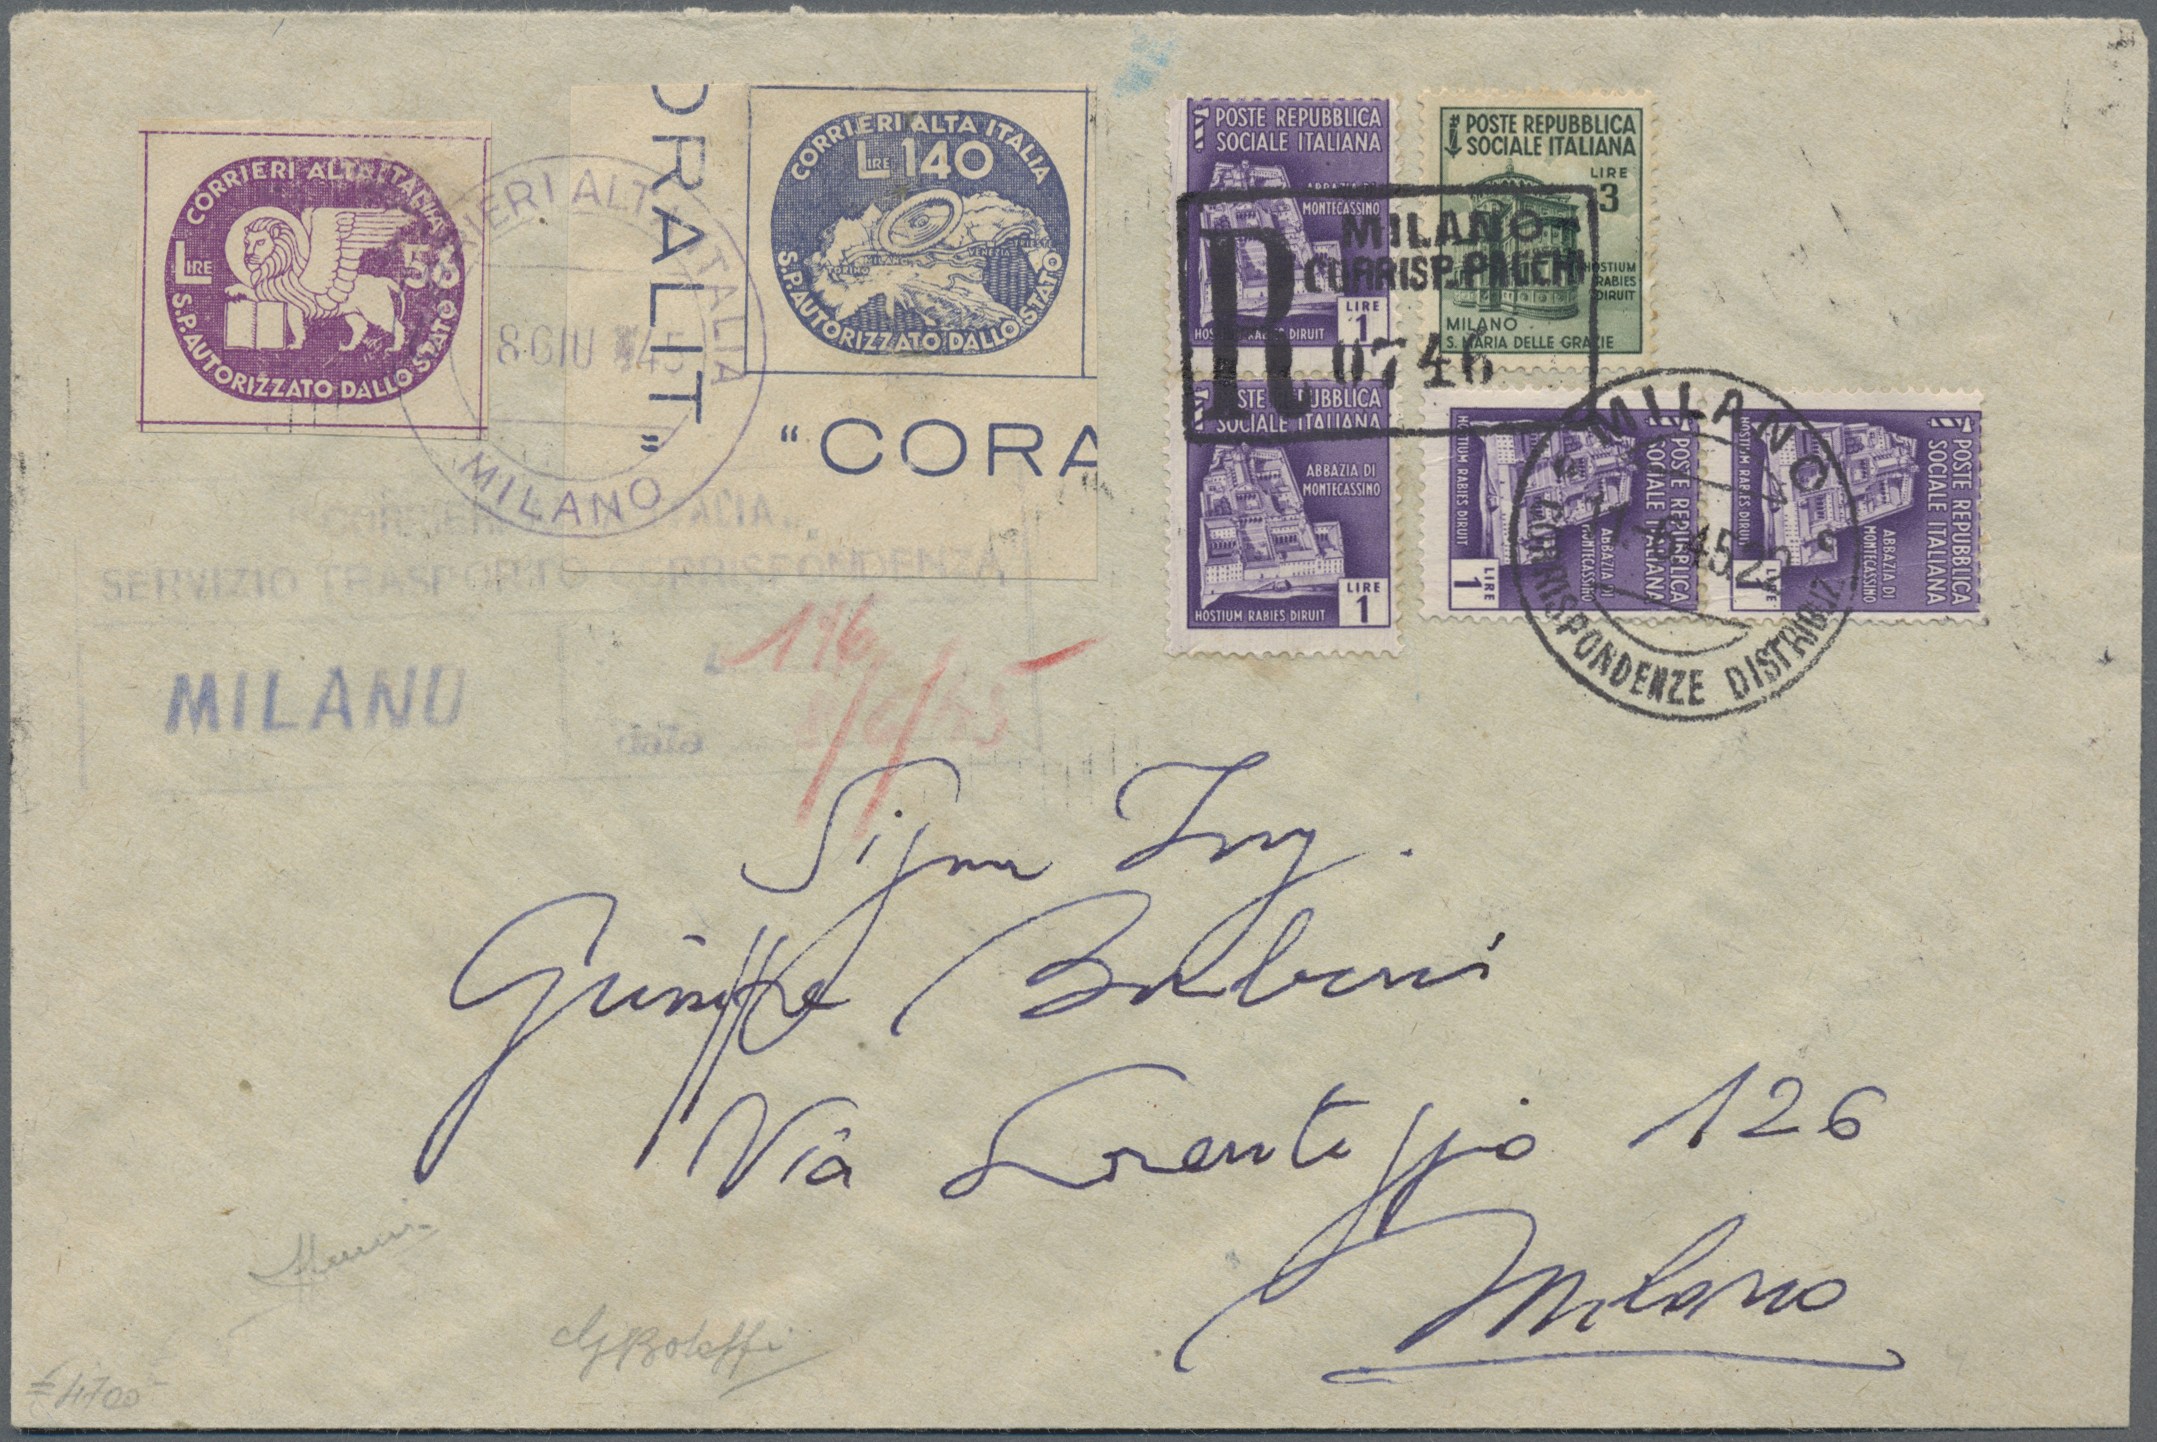 1945, Juni, Eingeschriebener Brief frankiert mit 2 Marken des privaten Postdienstleisters CORALIT, entwertet am 8. Juni 1945 in Mailand - 196 L Porto.